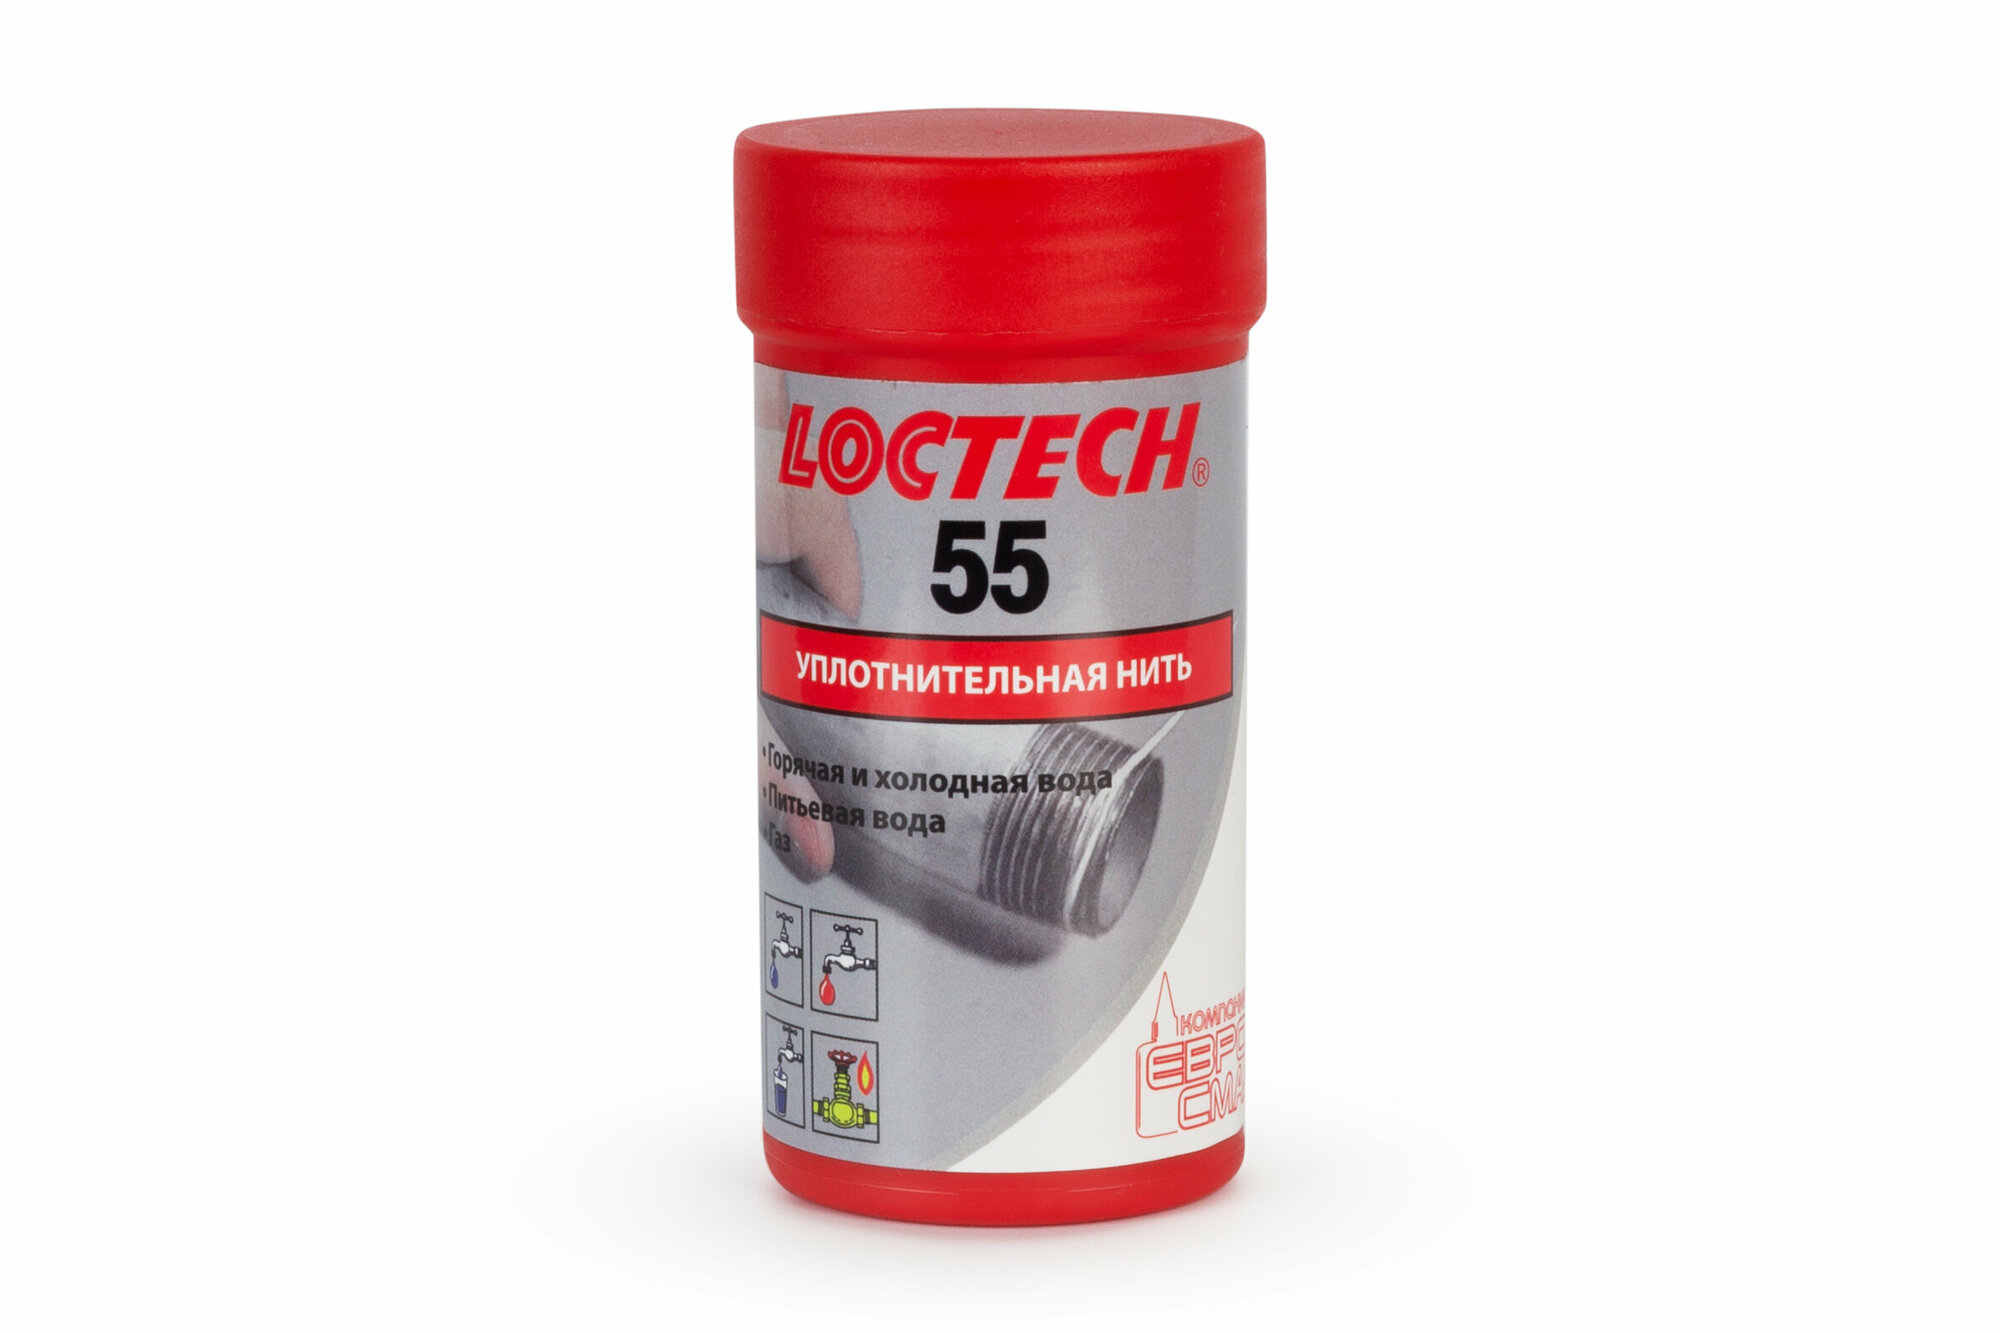 Нить для герметизации резьбовых соединений LOCTECH 55, 160м